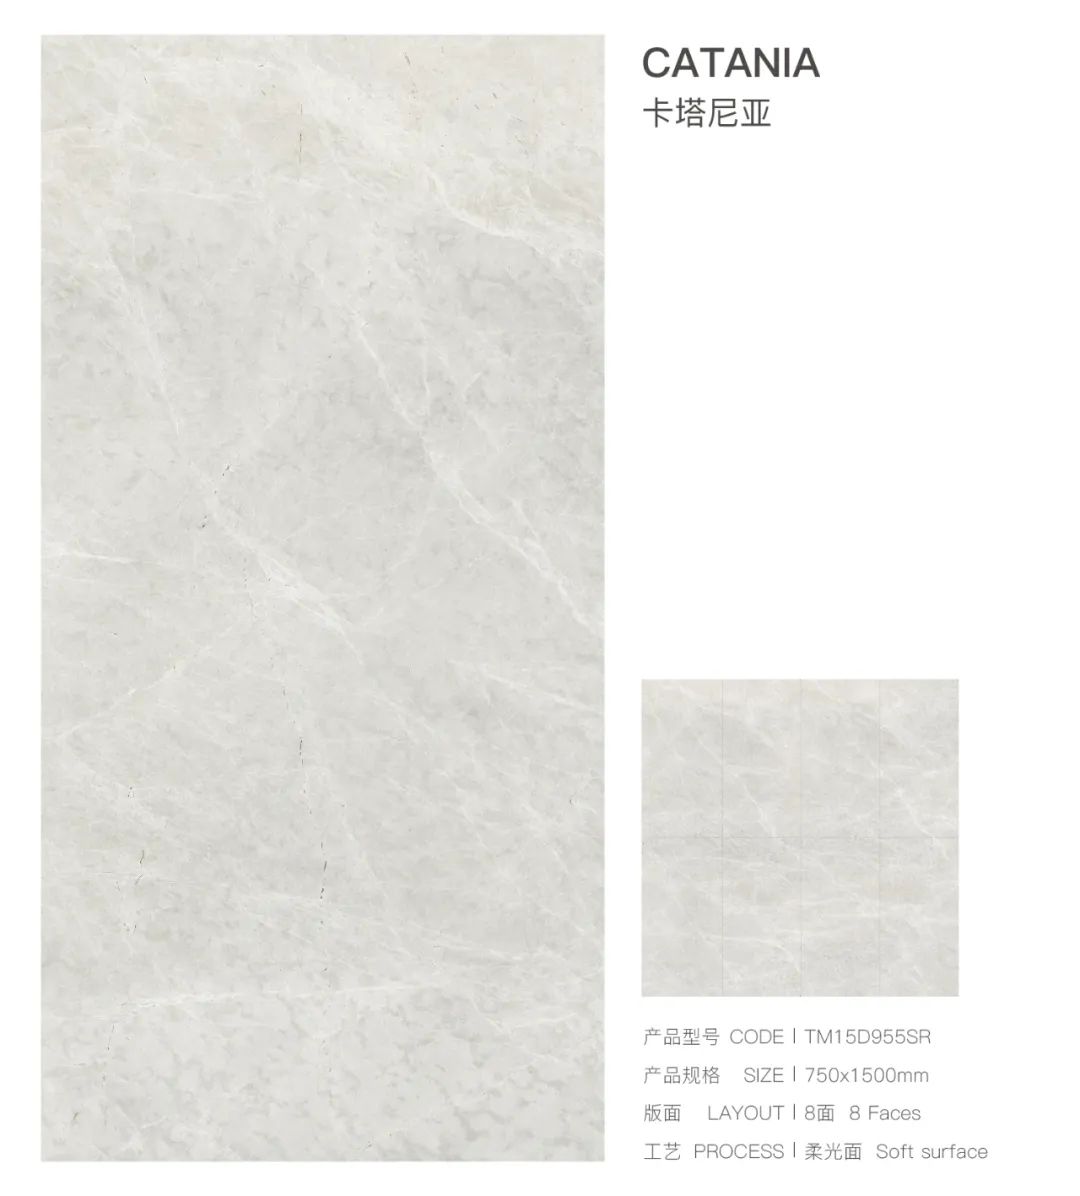 新品上市丨通利大理石瓷砖750x1500新品魅力呈现(上)(图18)